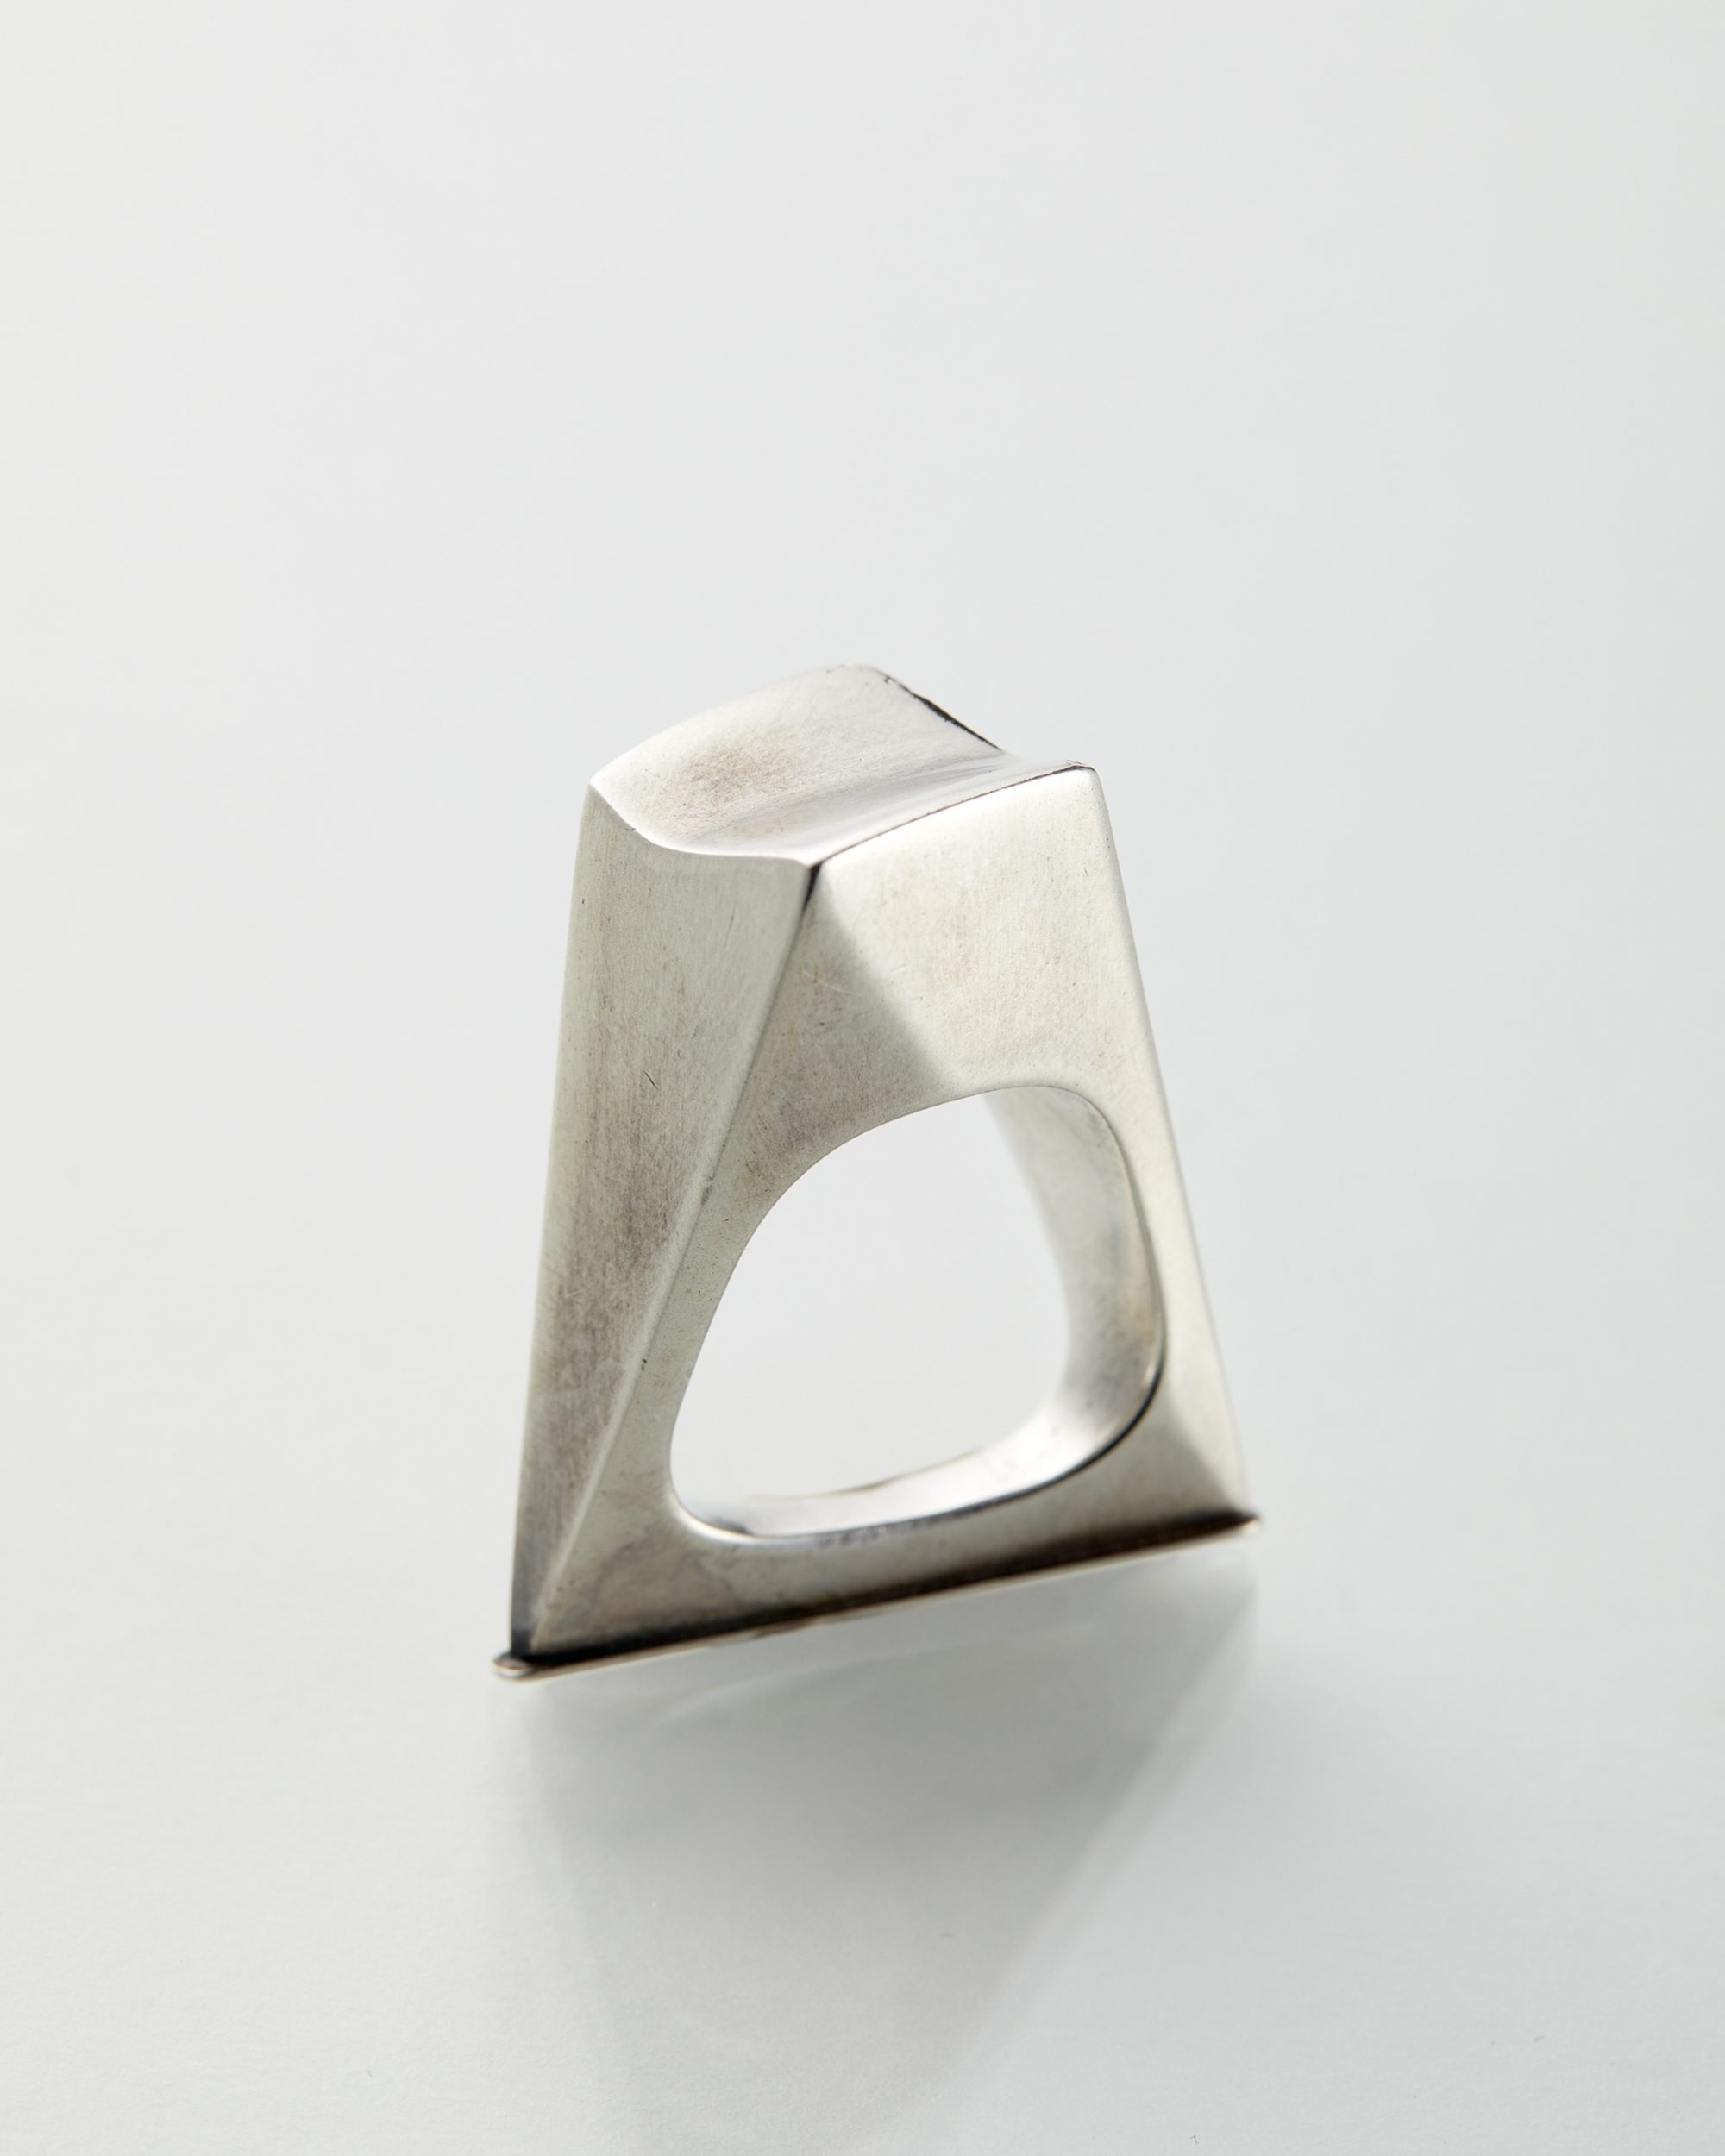 Ring designed by Torun Bülow-Hübe for Georg Jensen, — Modernity